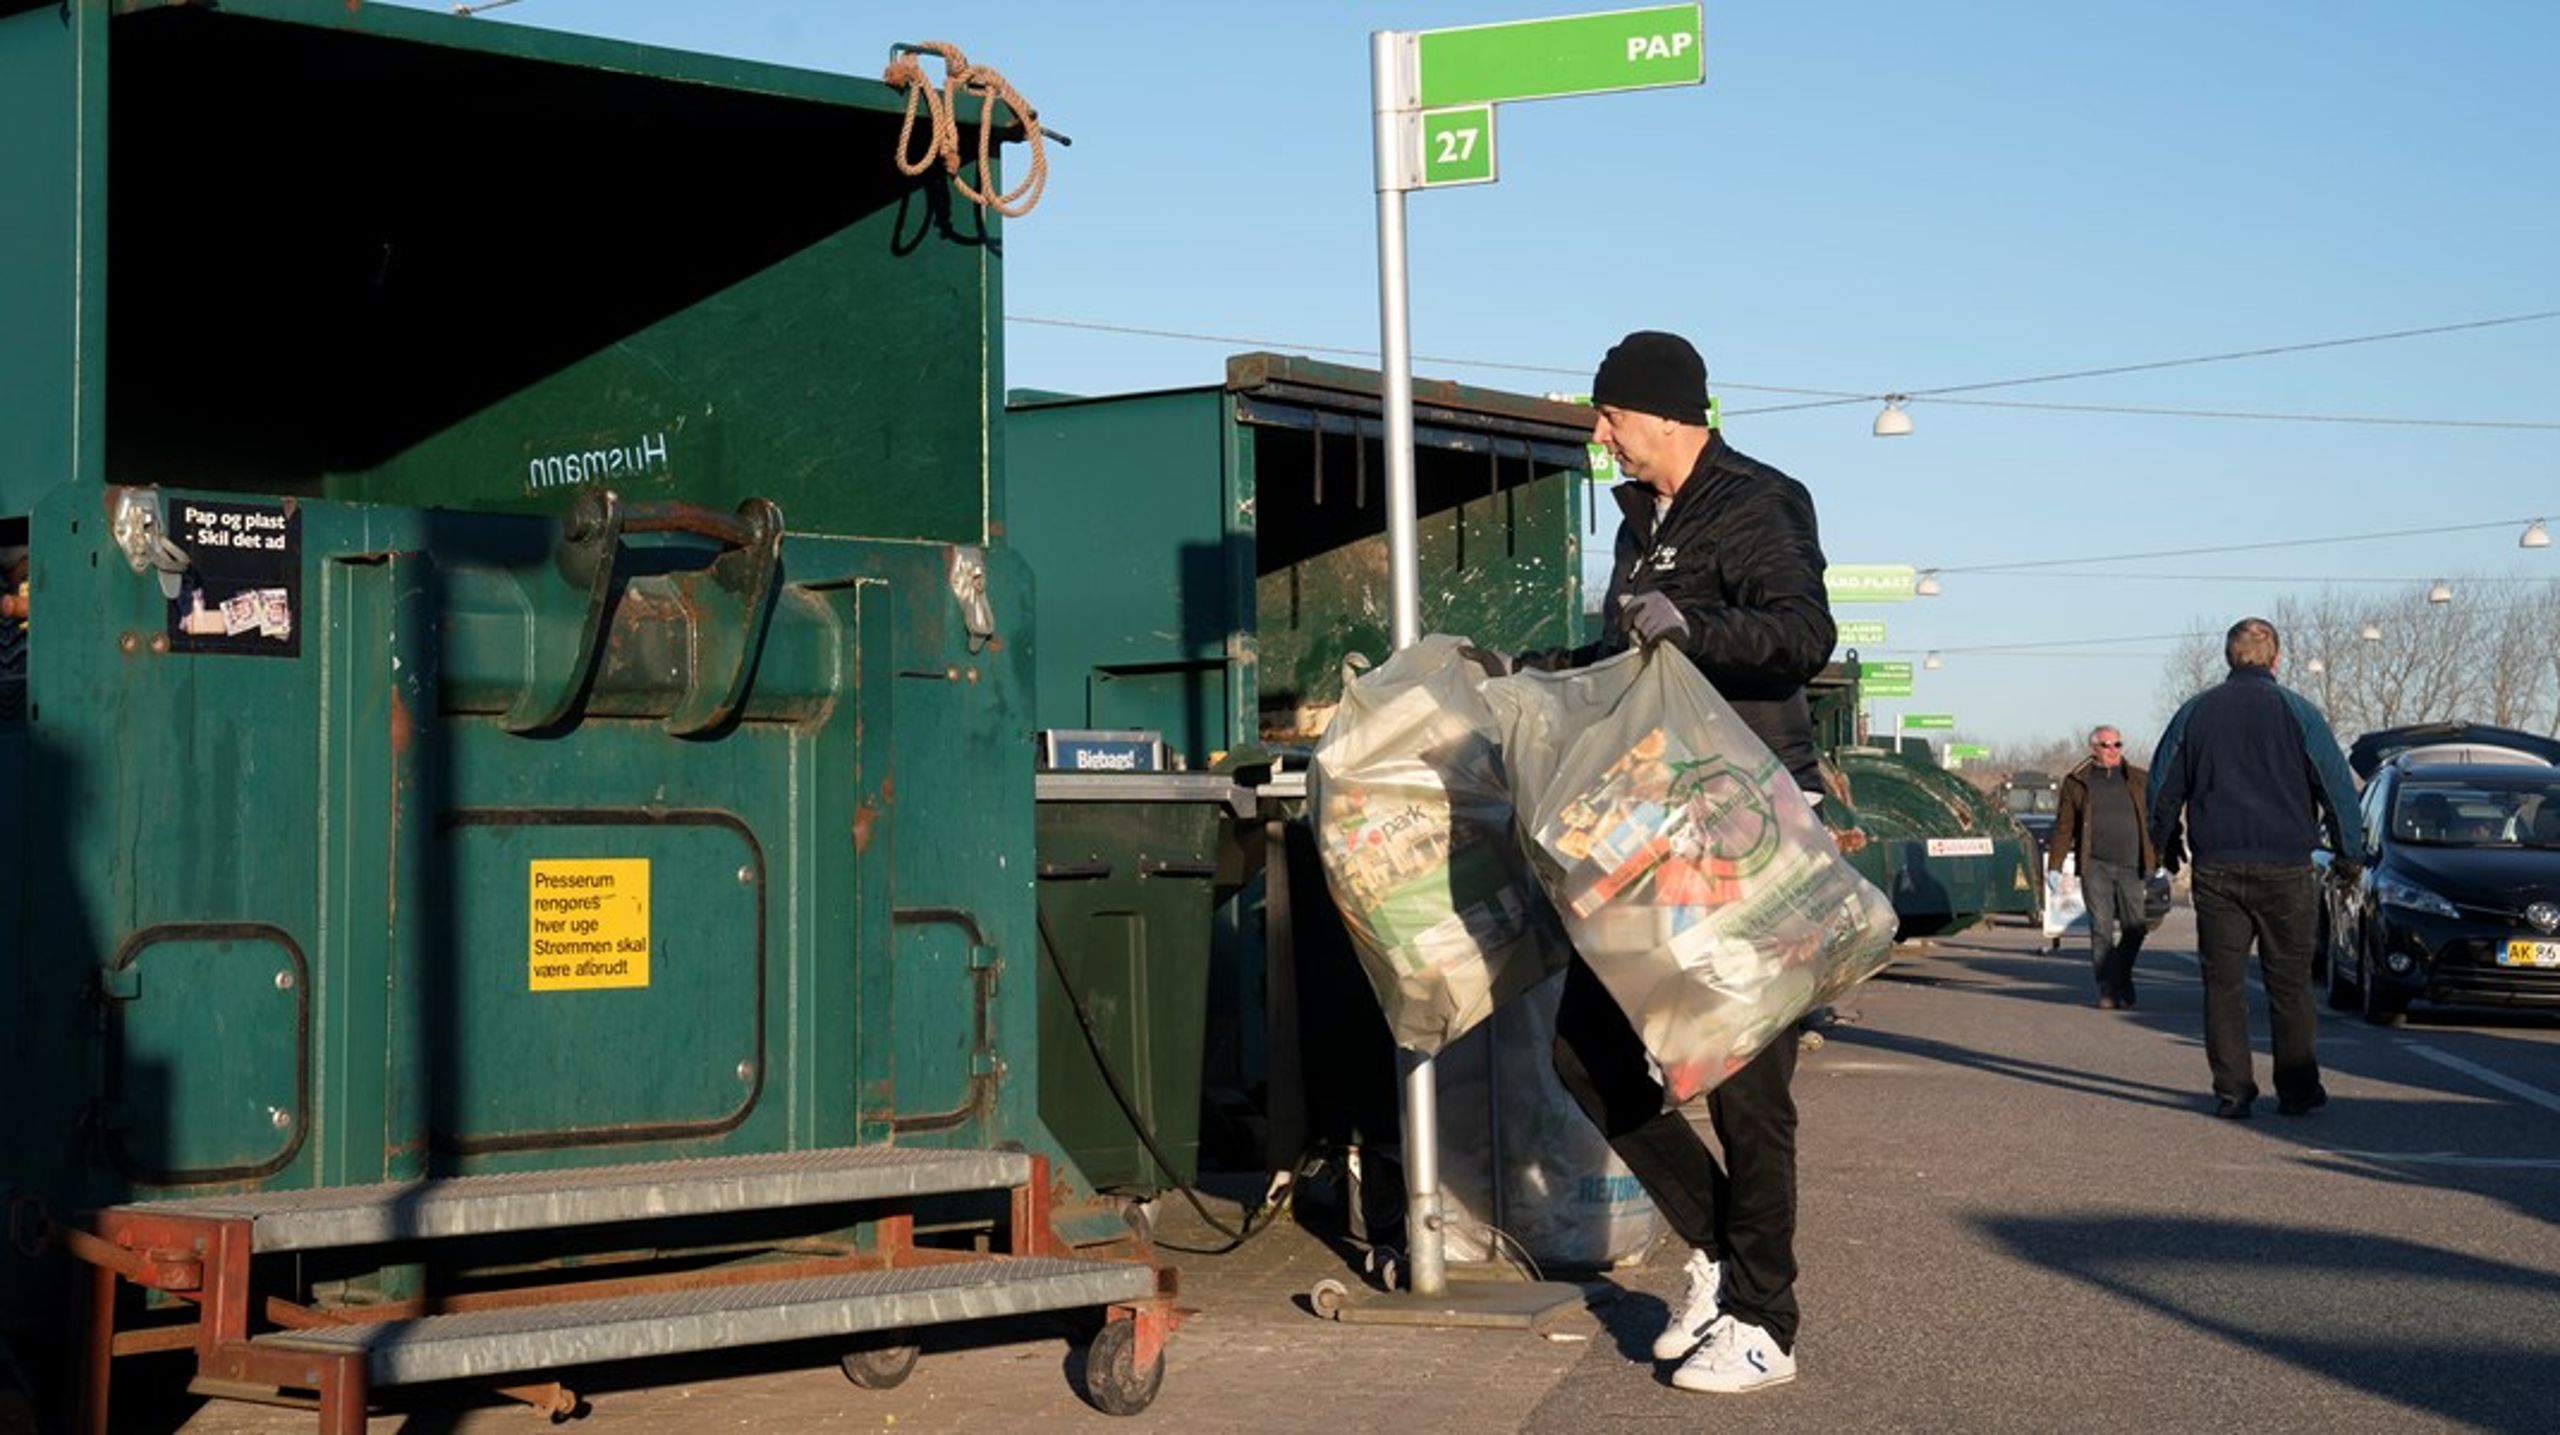 Den danske affaldssektor kan forbrænde fire millioner tons affald om året. I 2030 skal en kapacitet svarende til 1,2 millioner ton være lukket.